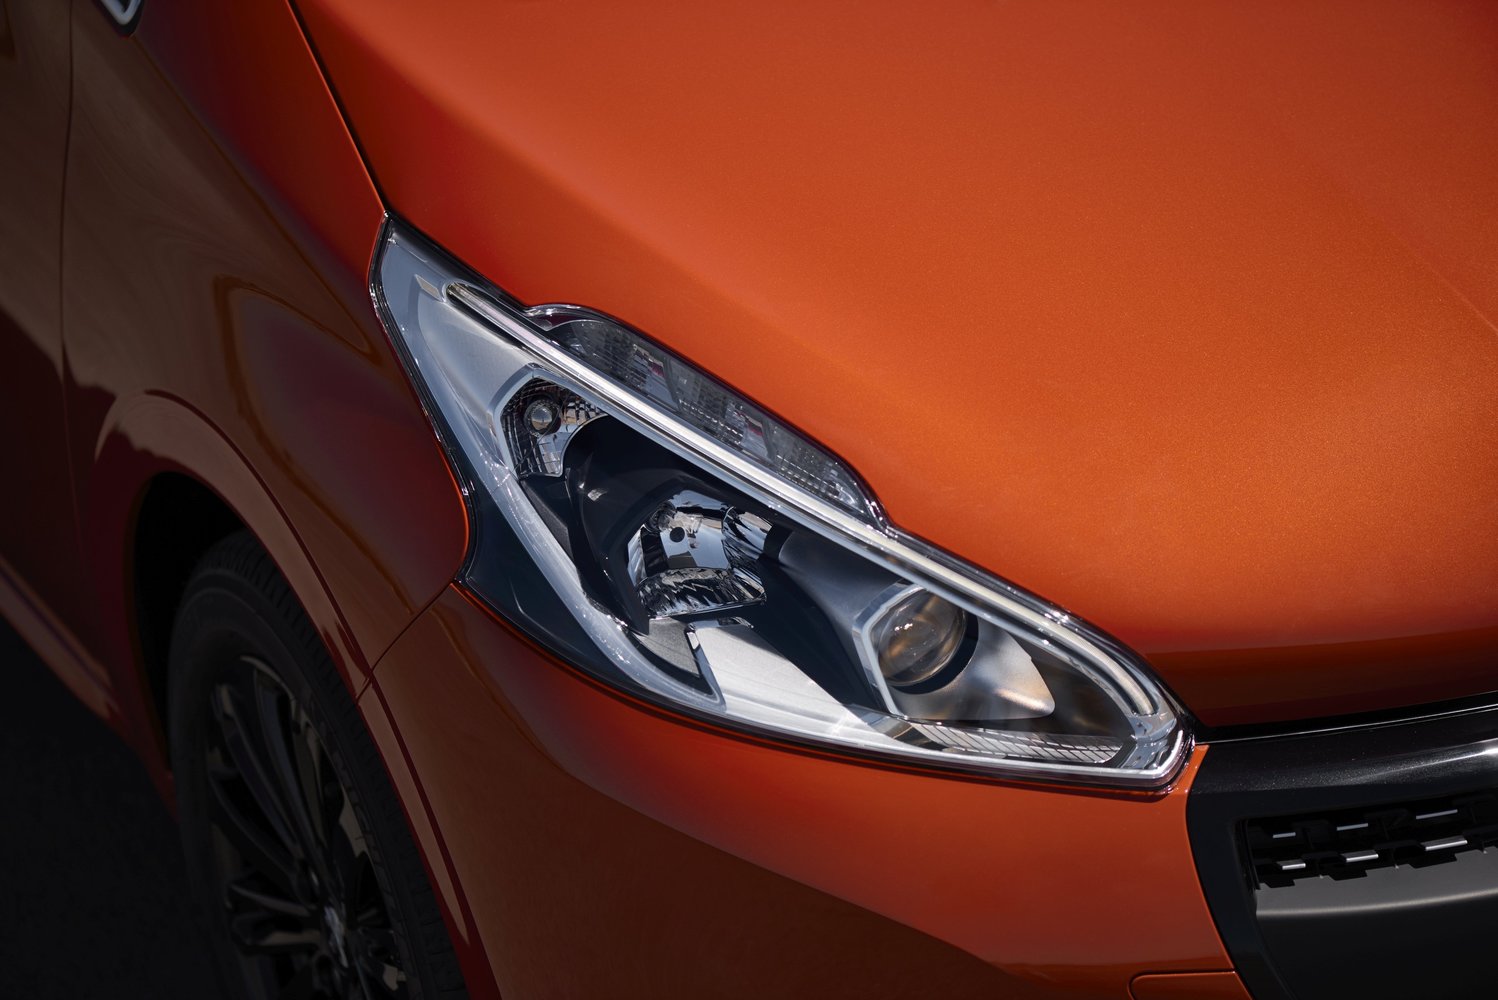 хэтчбек 5 дв. Peugeot 208 2015 - 2016г выпуска модификация 1.0 MT (68 л.с.)